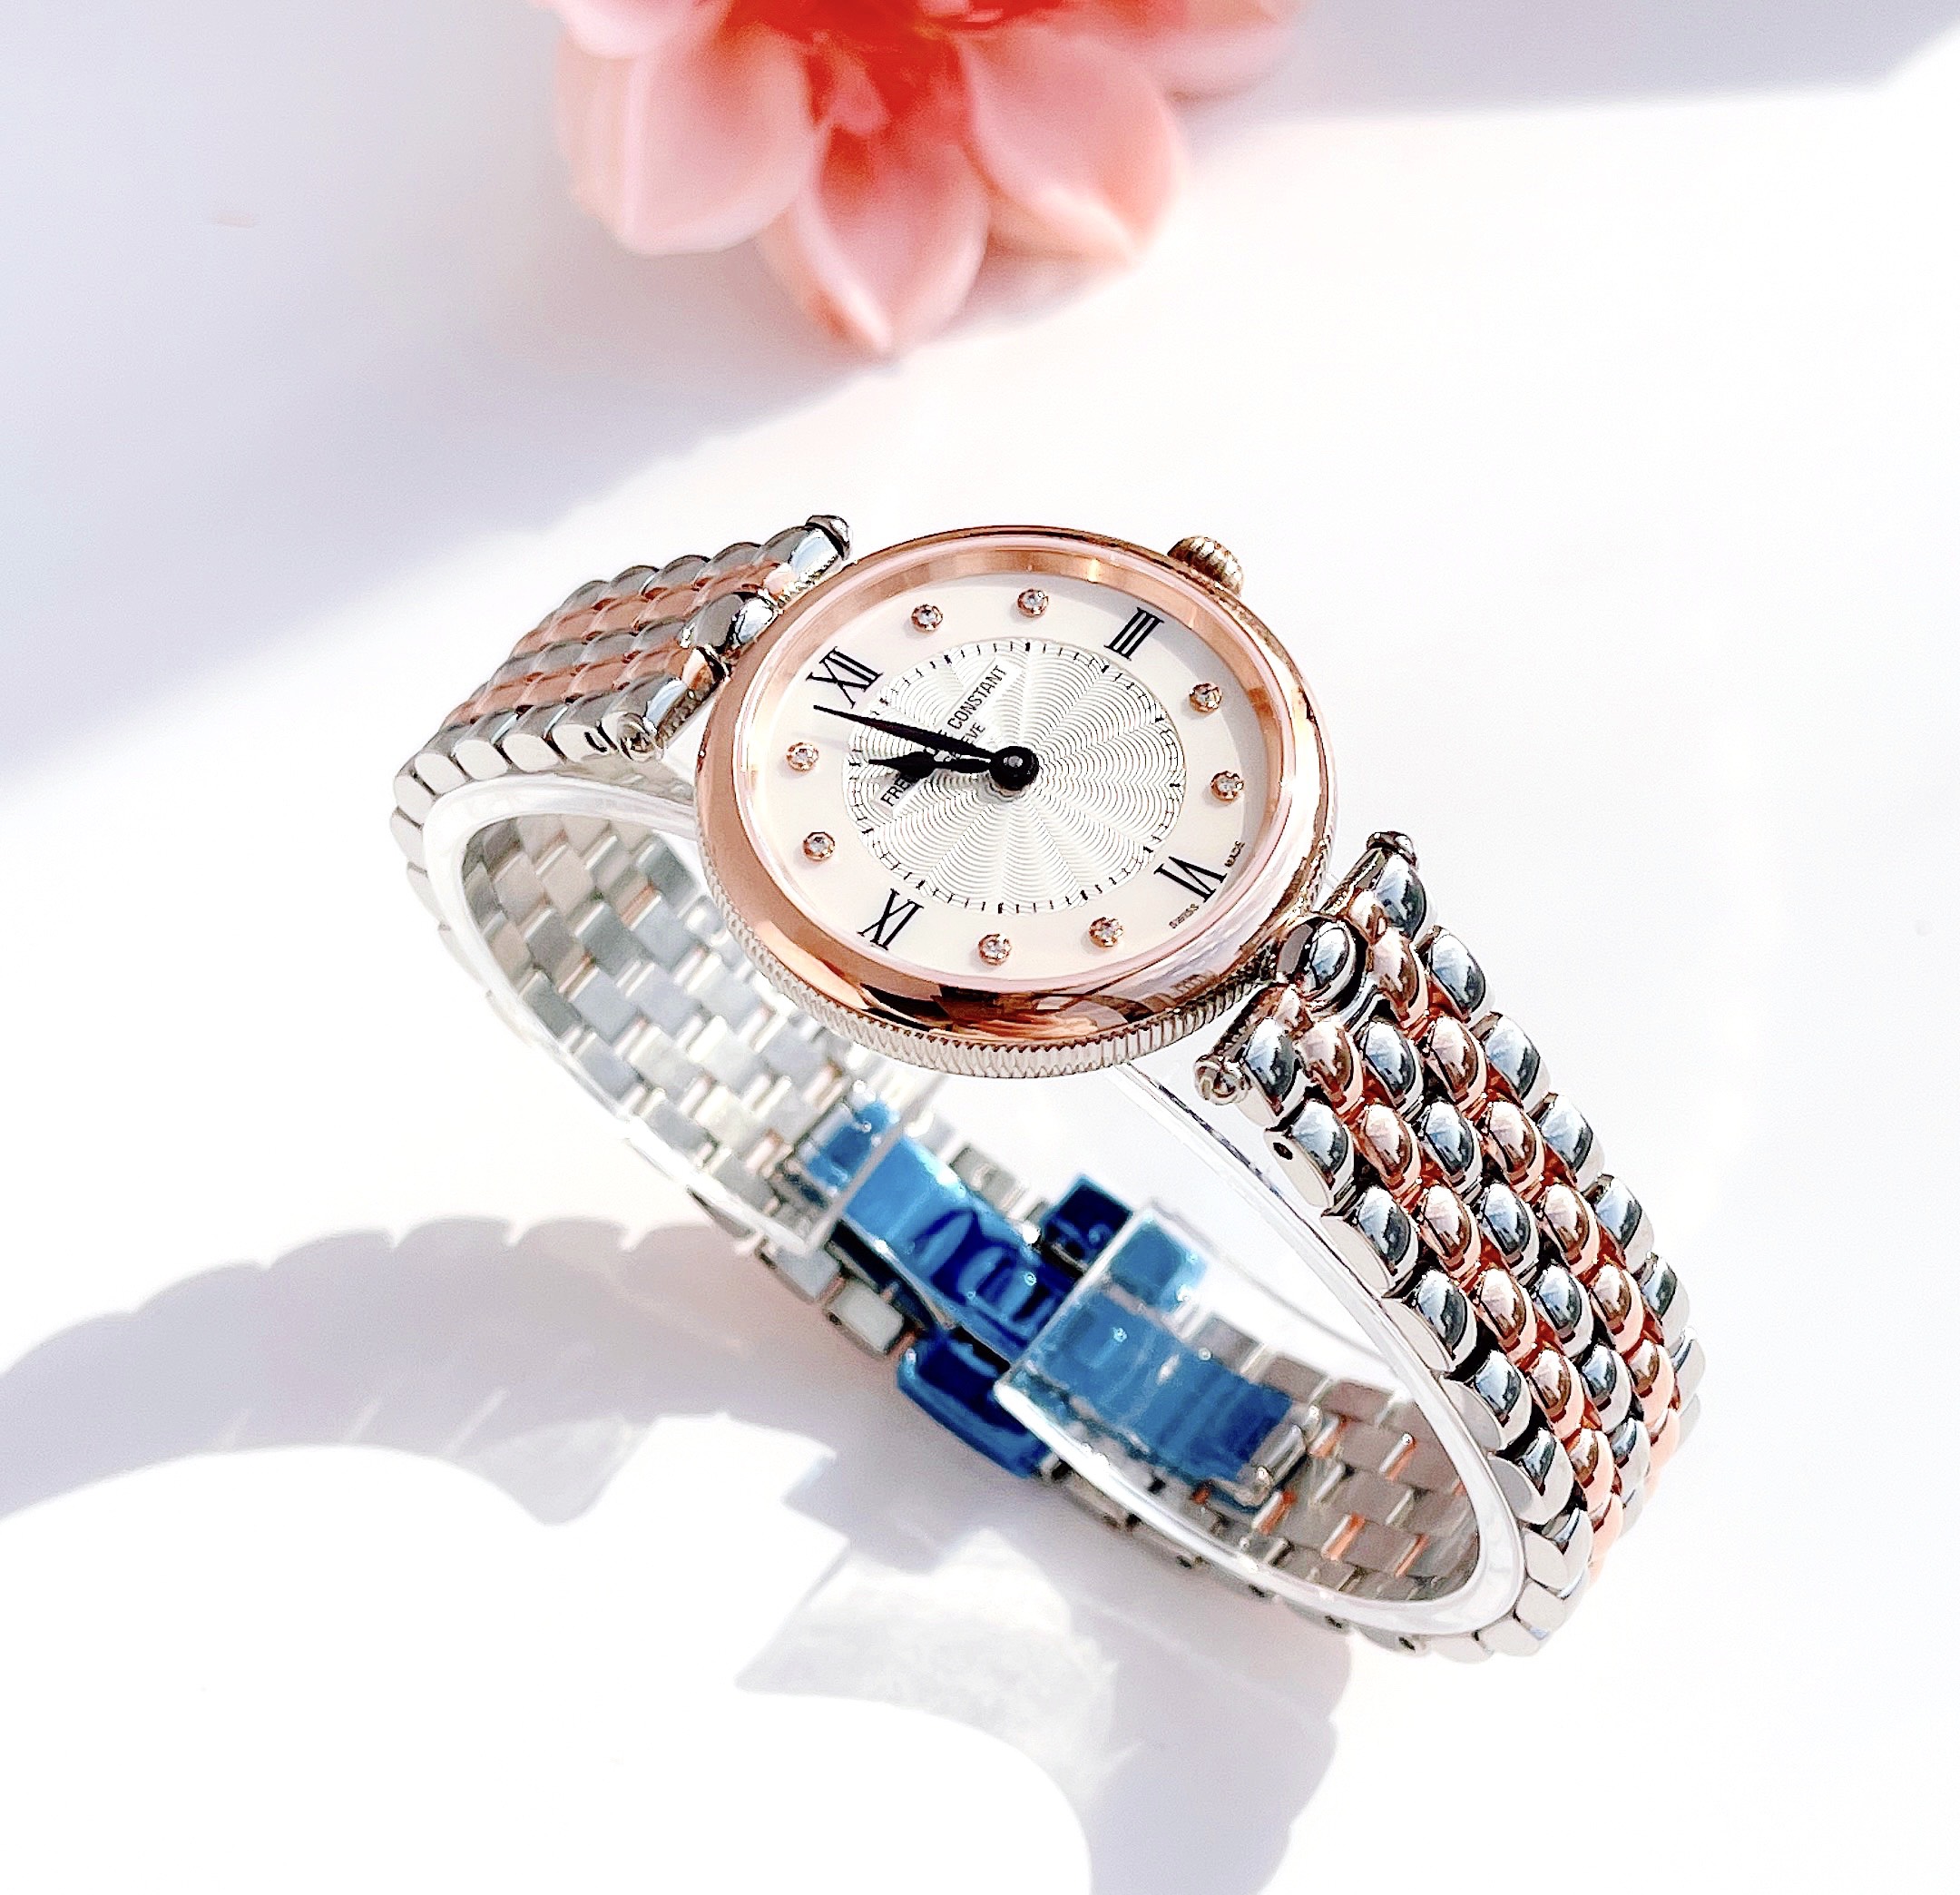 Đồng hồ Frederique constant Art Deco diamond